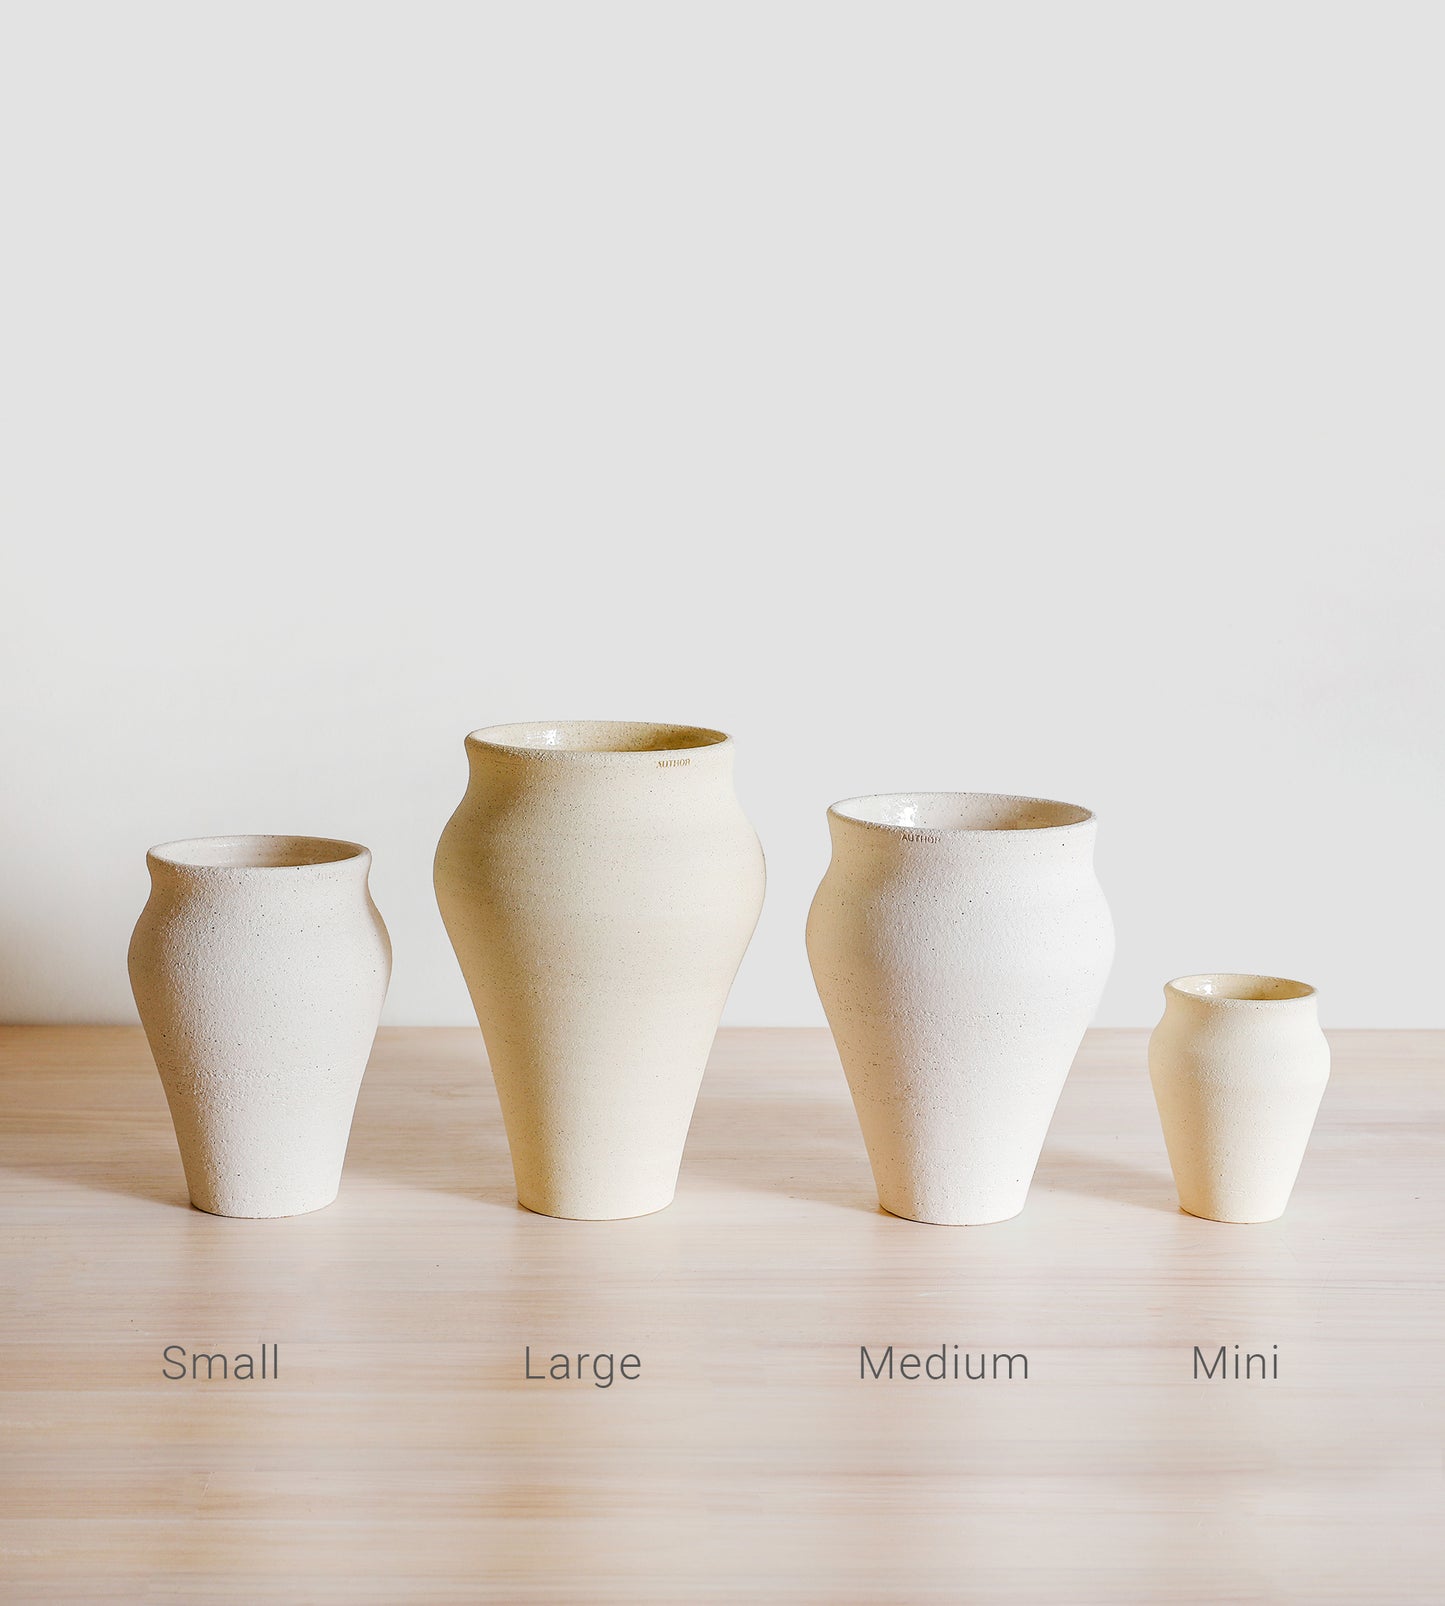 The Vase  |  Small  |  Coastal